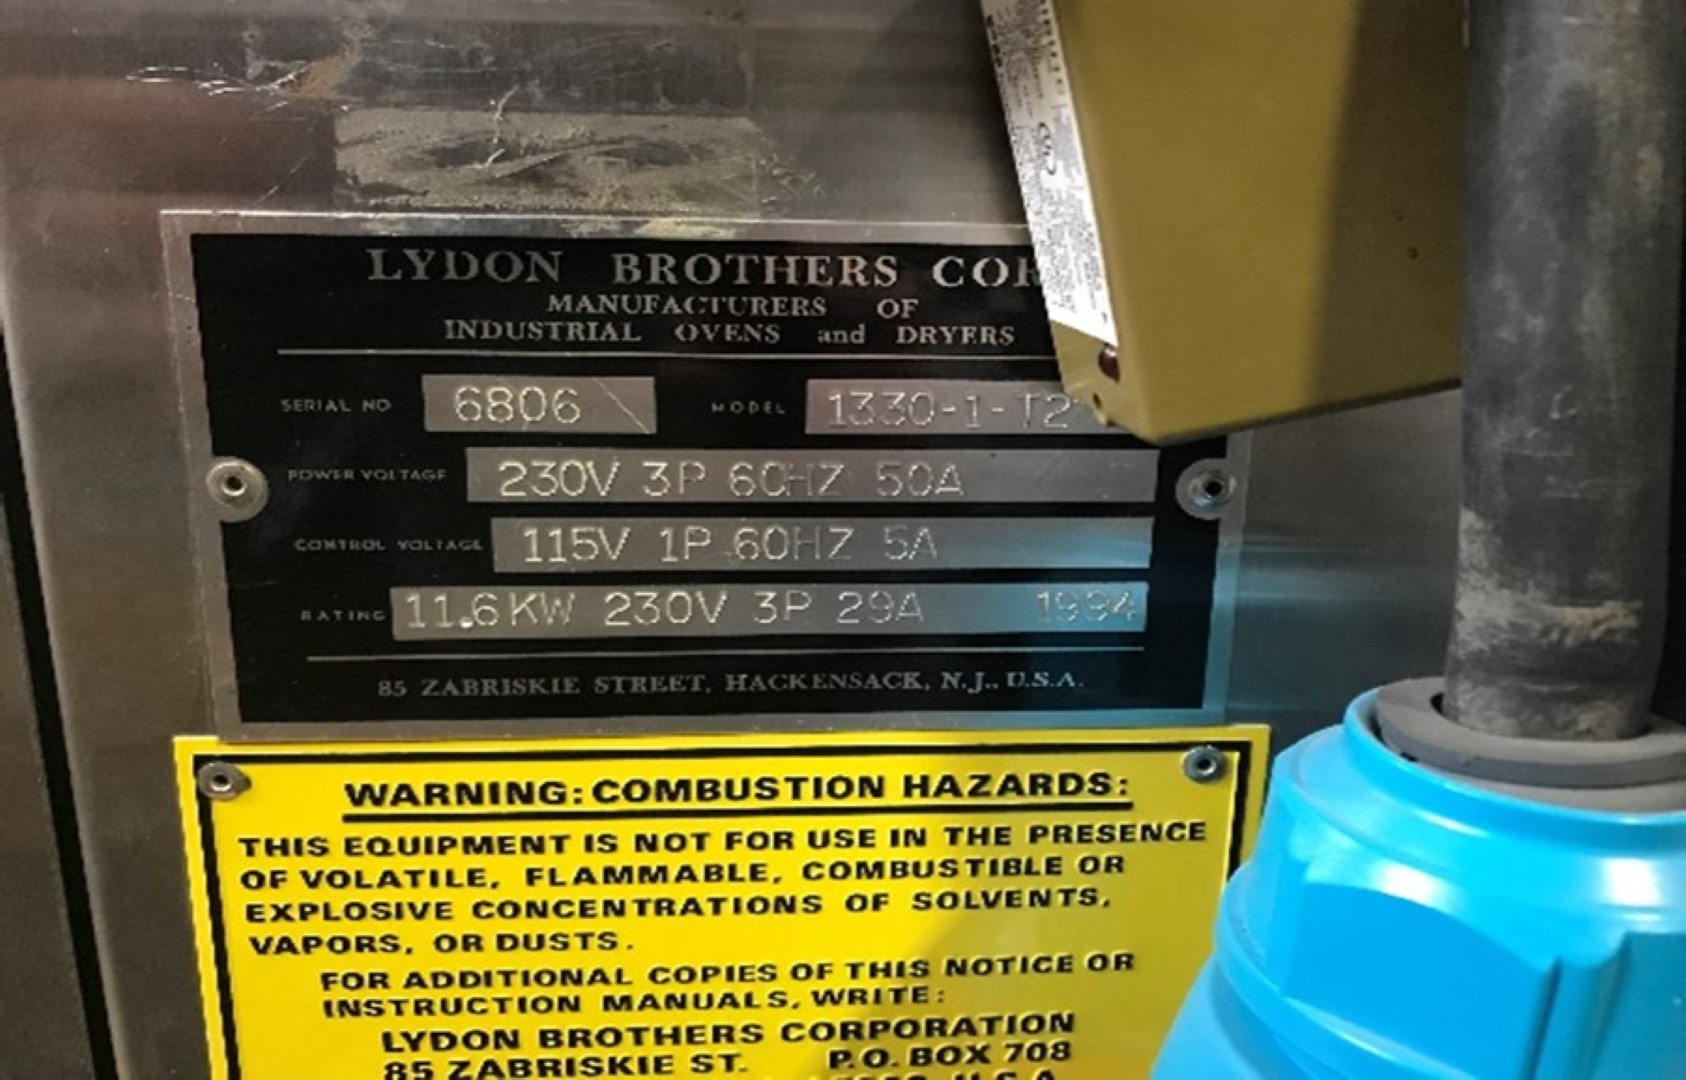 Lydon  Oven, Model 1330-1-T2, S/S